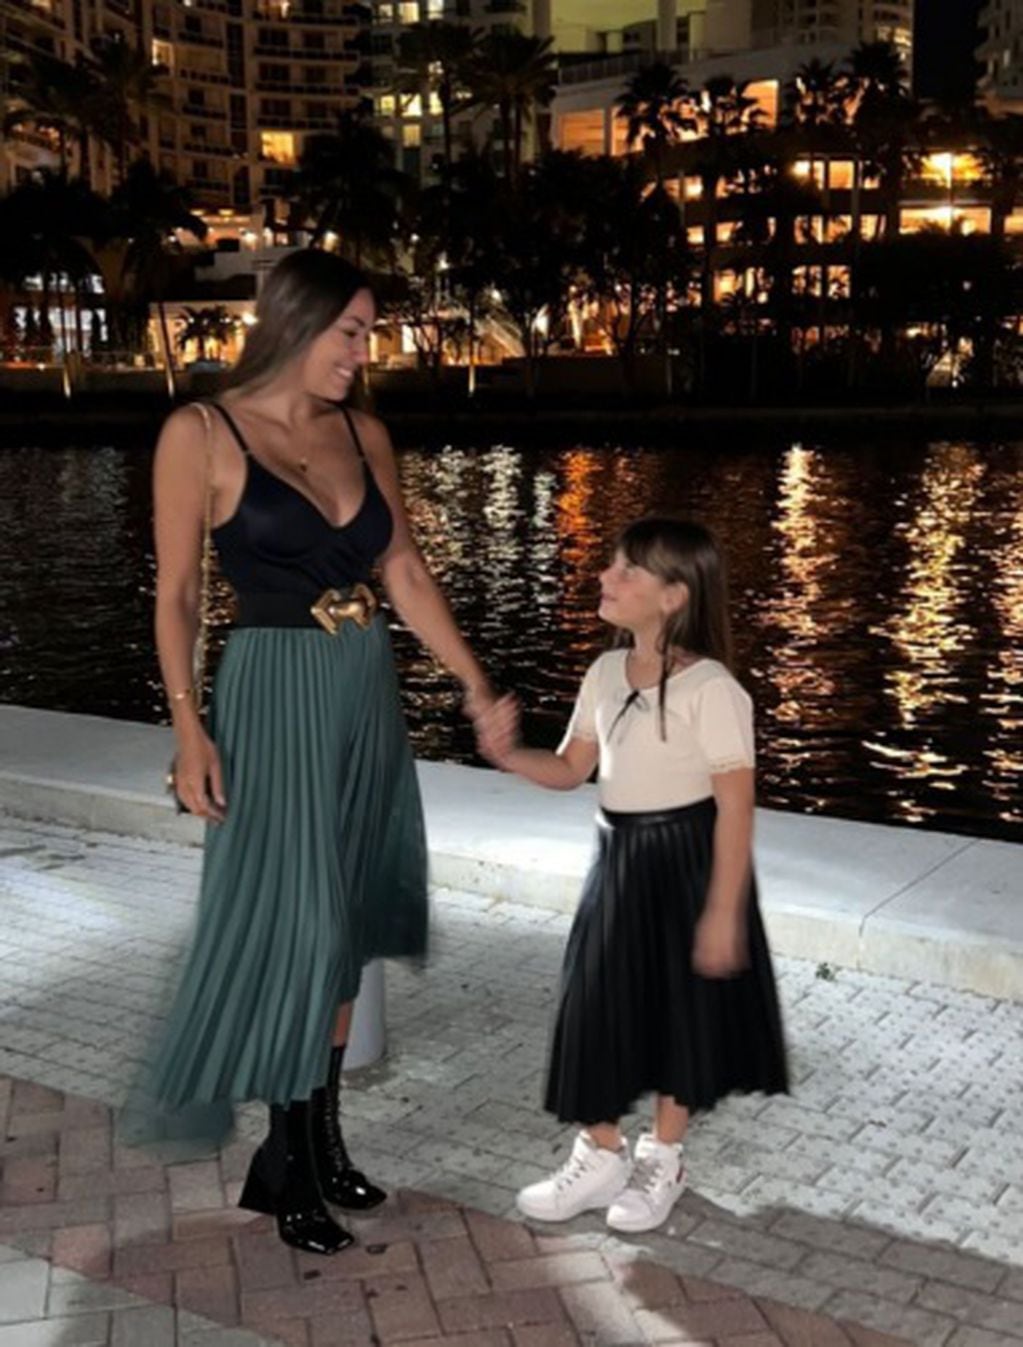 Floppy y Moorea combinaron faldas plisadas en la noche de Miami.